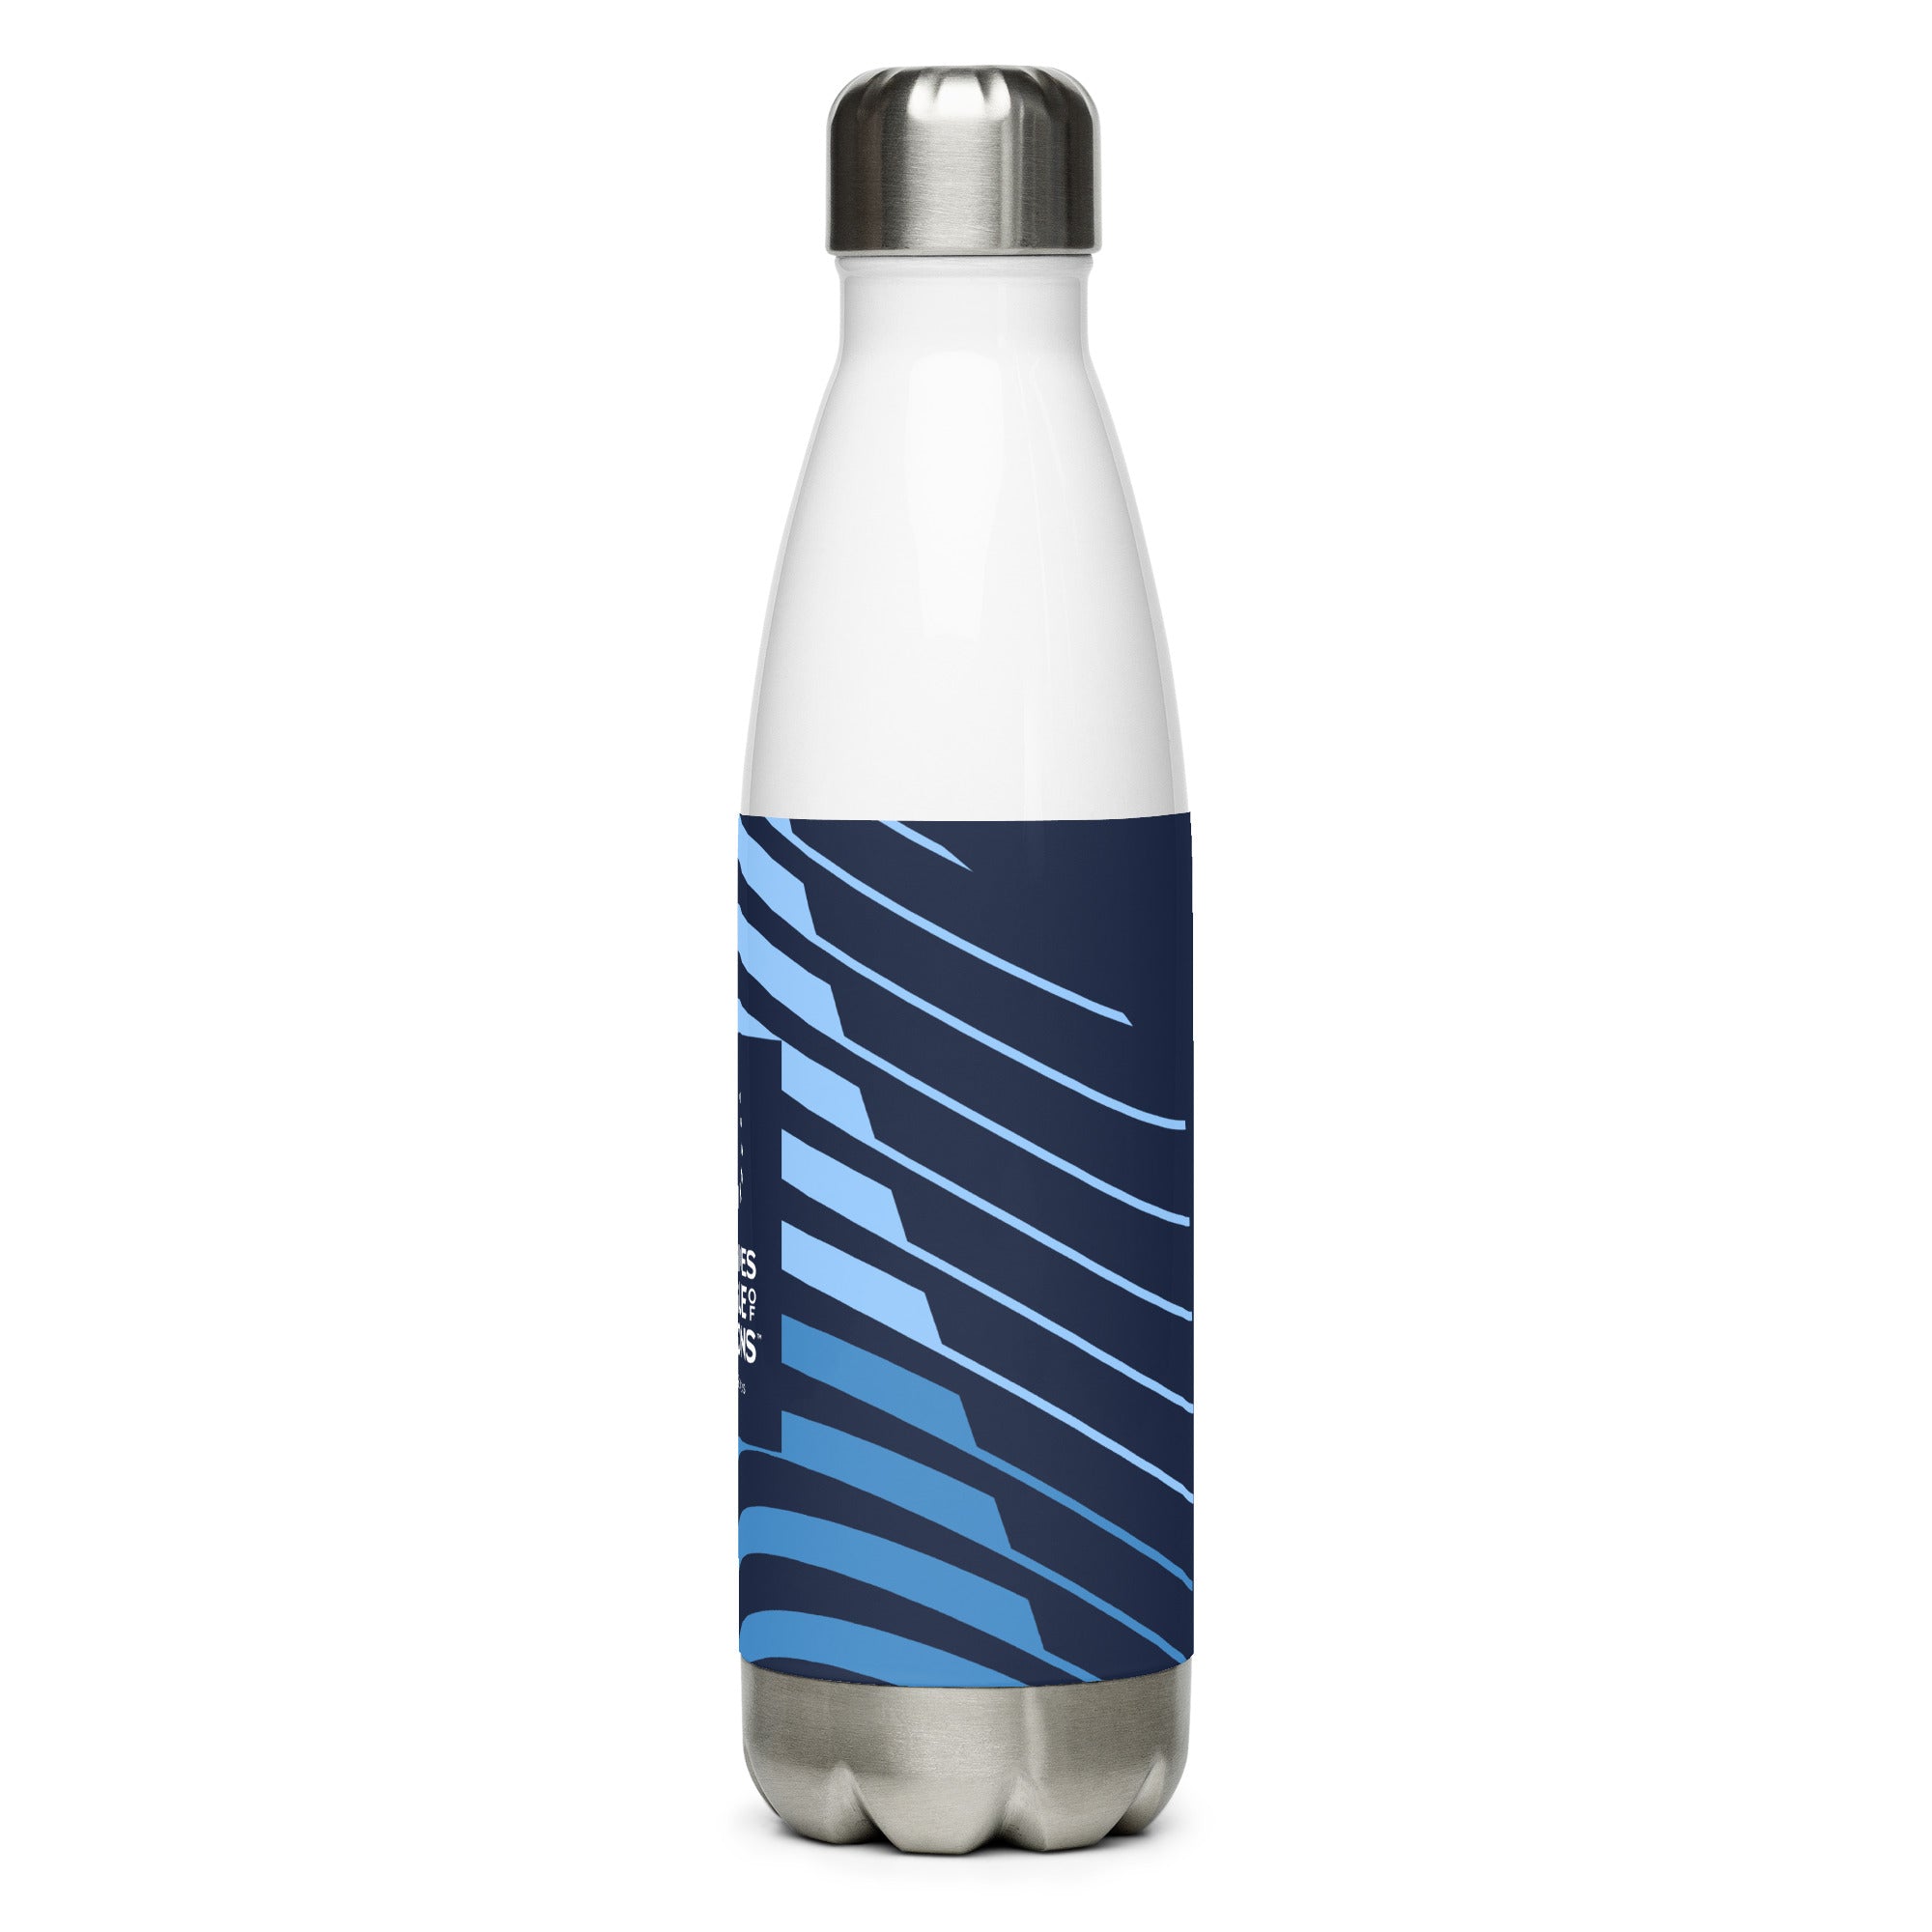 LLN Stainless steel water bottle